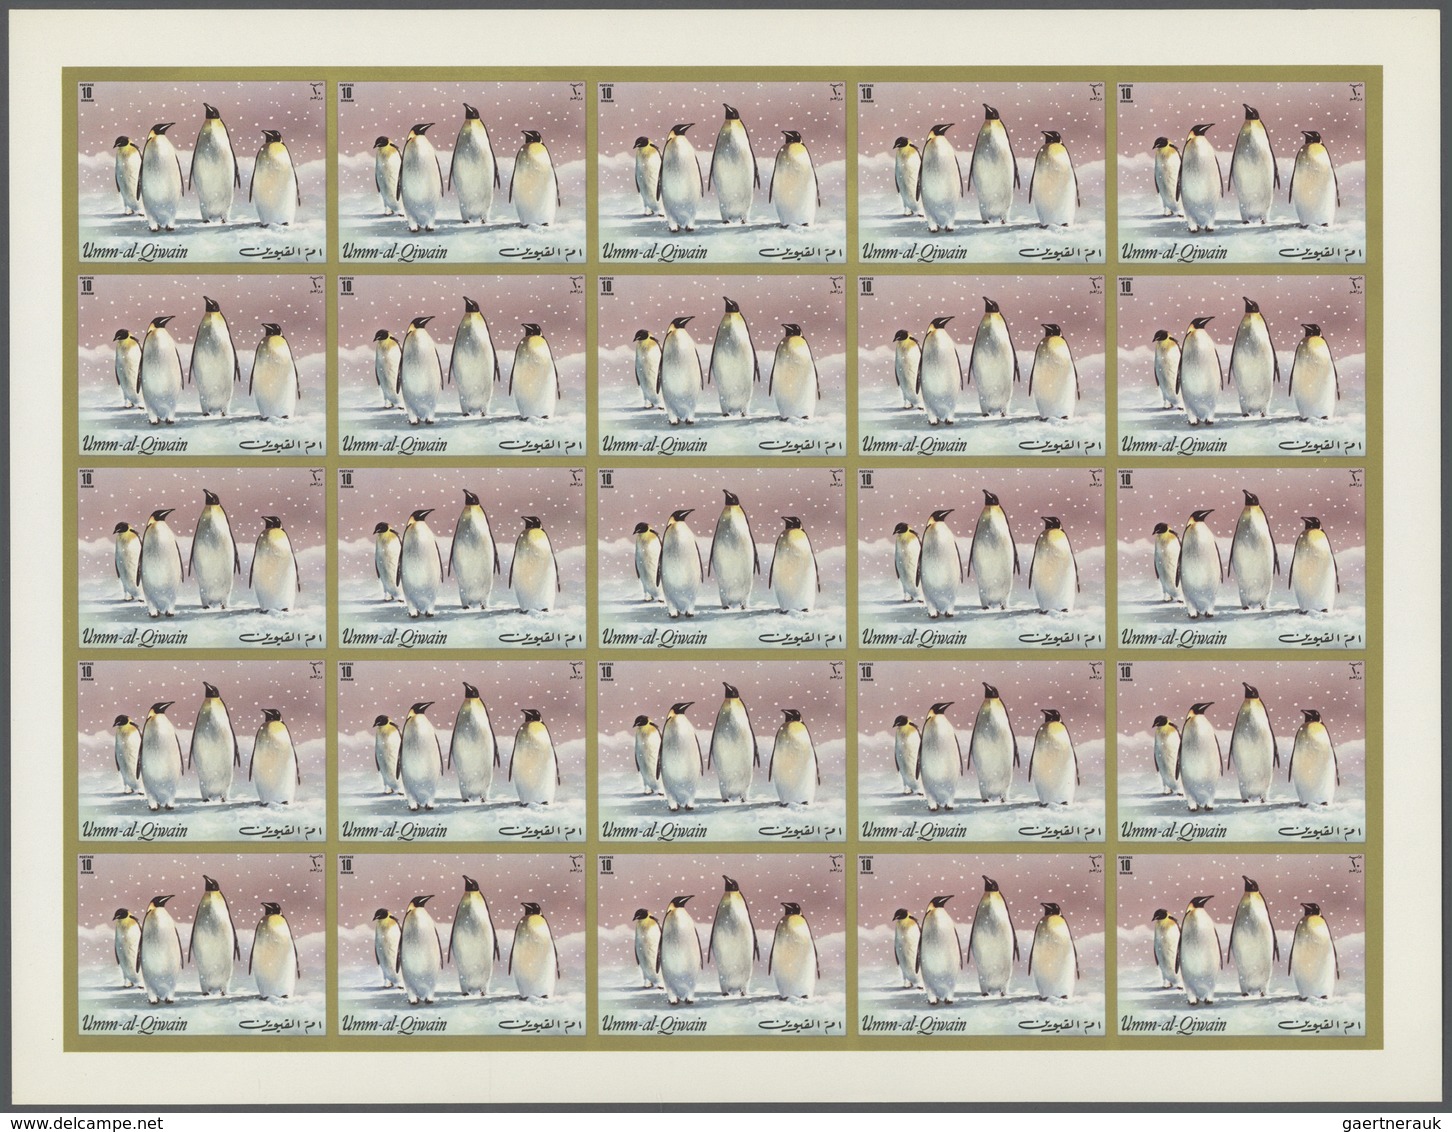 10050 Umm al Qaiwain: 1971, Penguins (Antarctic), 5dh. to 4r., complete set of six values perf./imperf., s